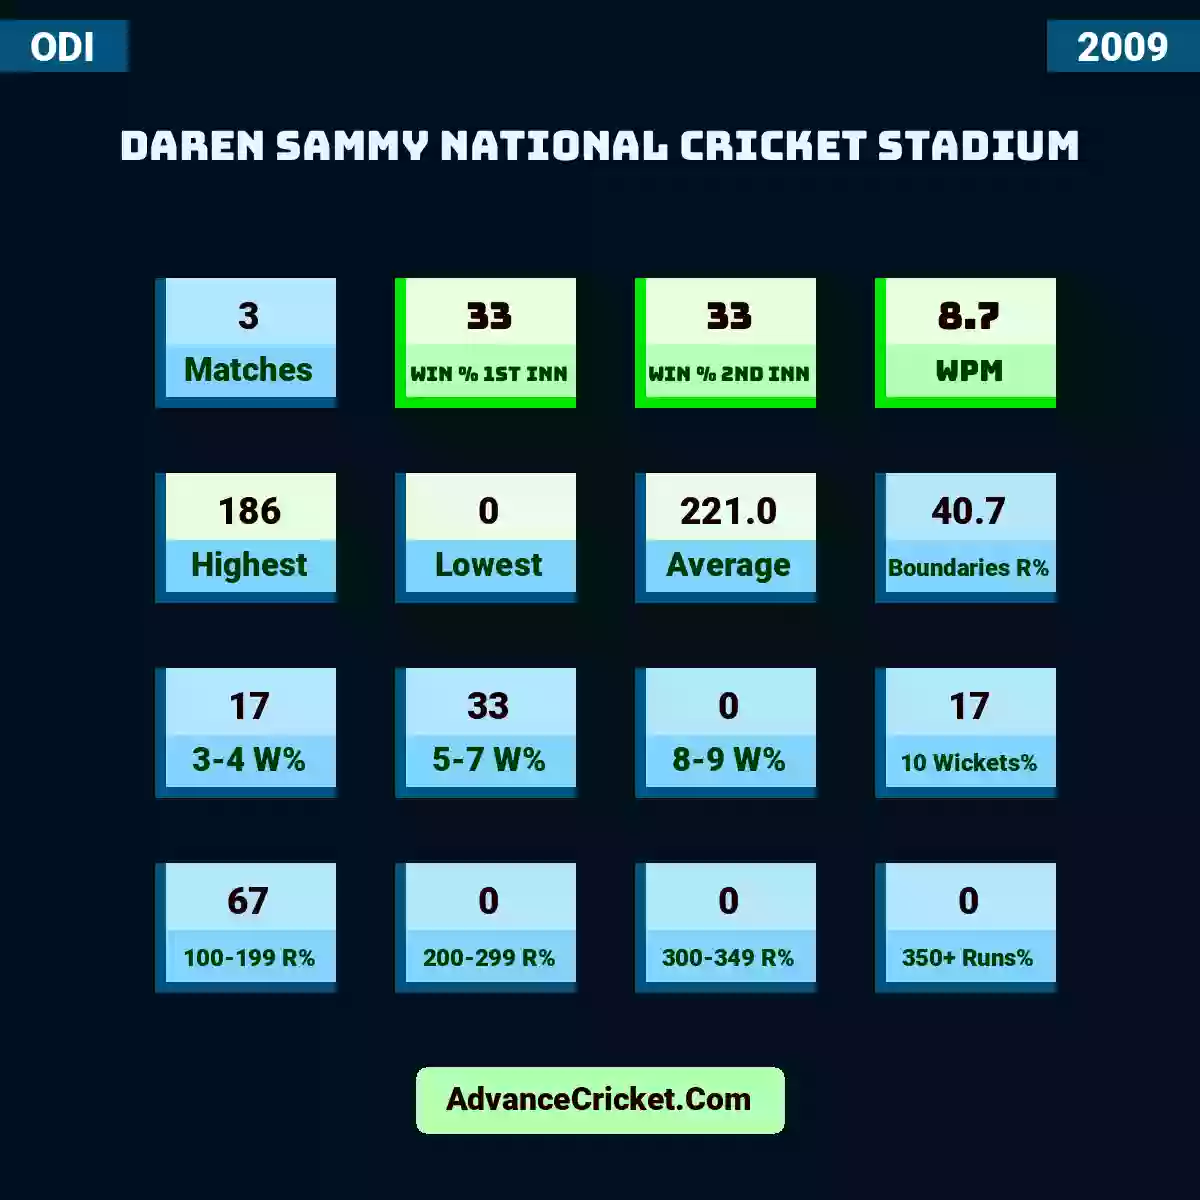 Image showing Daren Sammy National Cricket Stadium with Matches: 3, Win % 1st Inn: 33, Win % 2nd Inn: 33, WPM: 8.7, Highest: 186, Lowest: 0, Average: 221.0, Boundaries R%: 40.7, 3-4 W%: 17, 5-7 W%: 33, 8-9 W%: 0, 10 Wickets%: 17, 100-199 R%: 67, 200-299 R%: 0, 300-349 R%: 0, 350+ Runs%: 0.